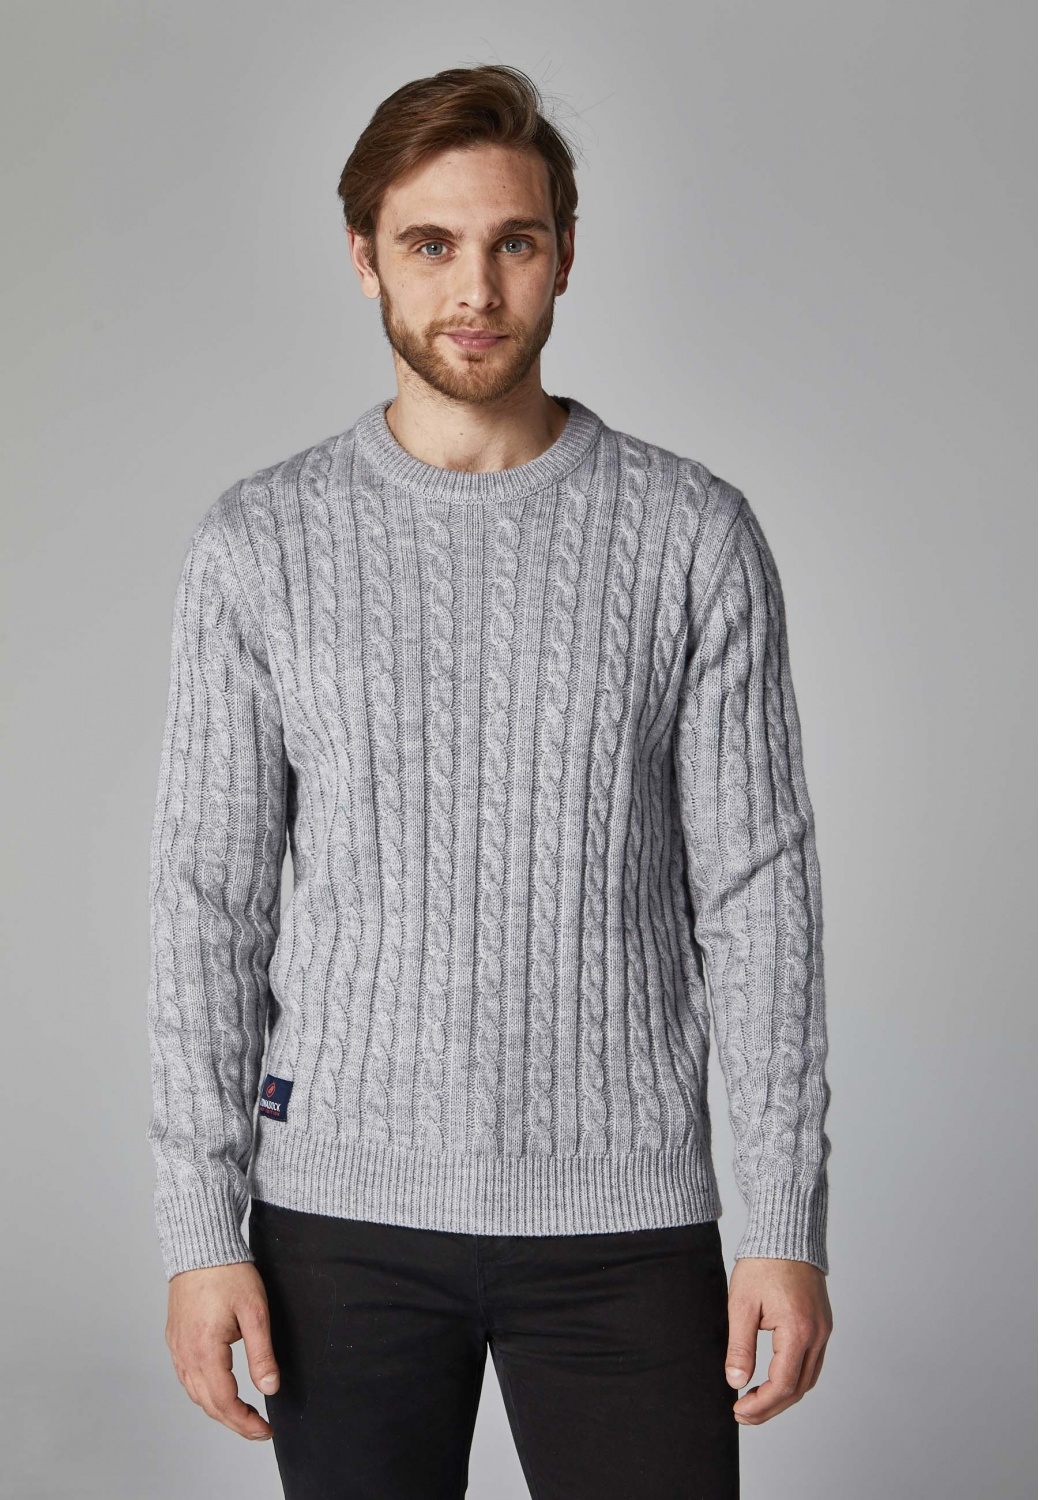 Men's grey chunky knit...